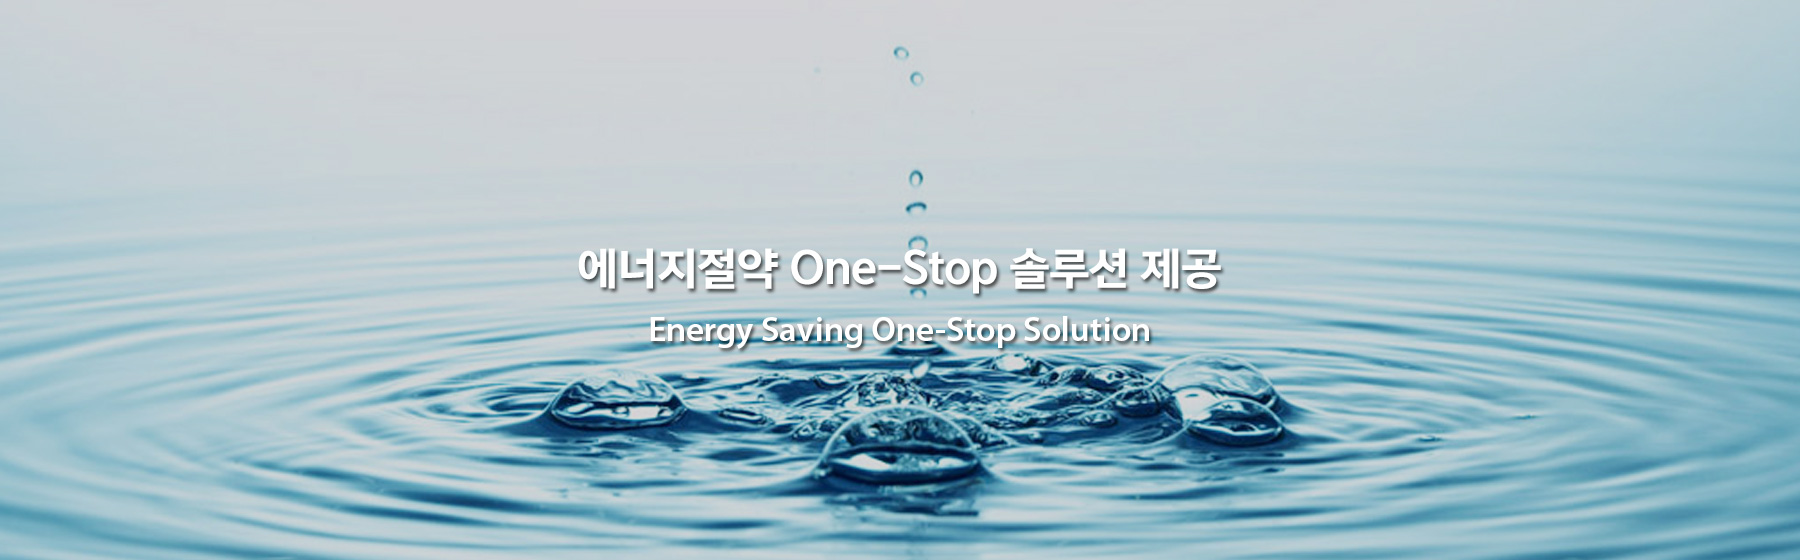 에너지 절약 one stop 솔루션 제공 Energy Saving One-Step Solution